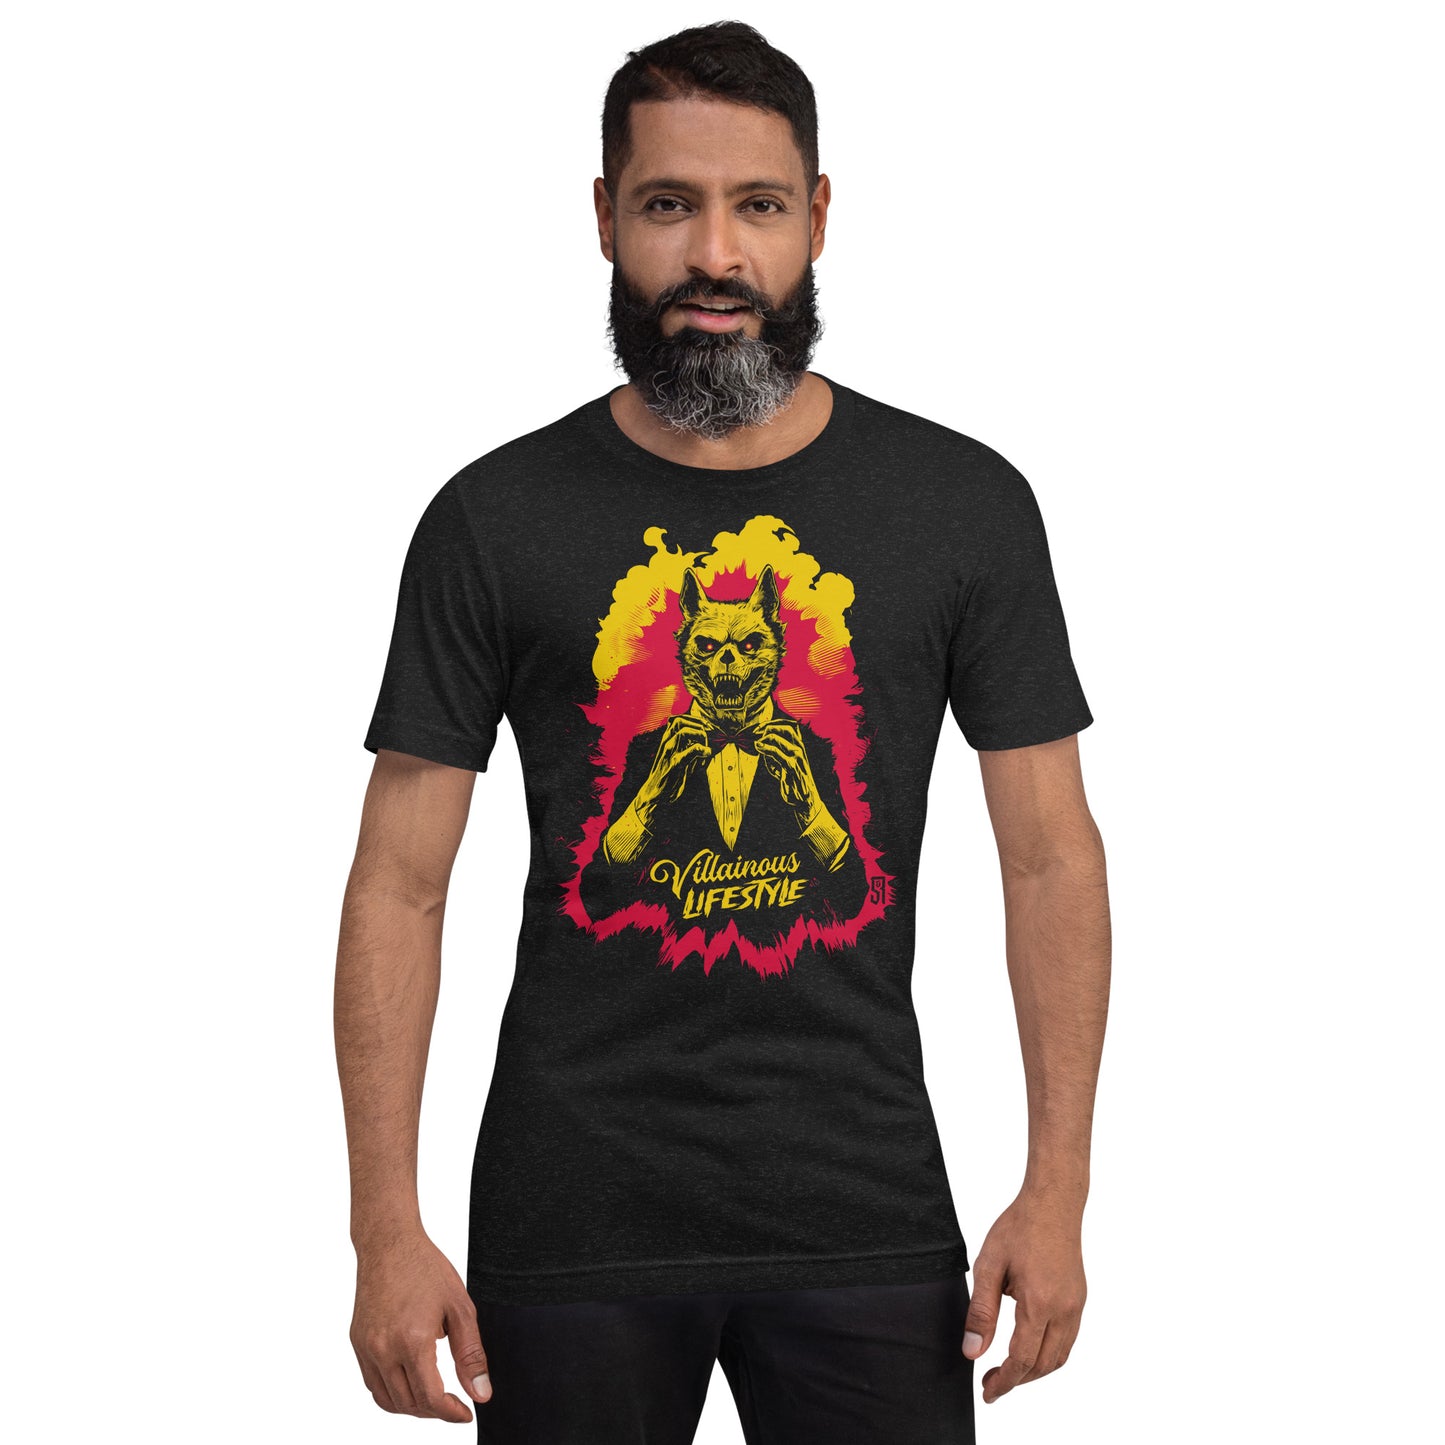 Villainous Lifestyle Wolves Unisex Retail Fit T-Shirt